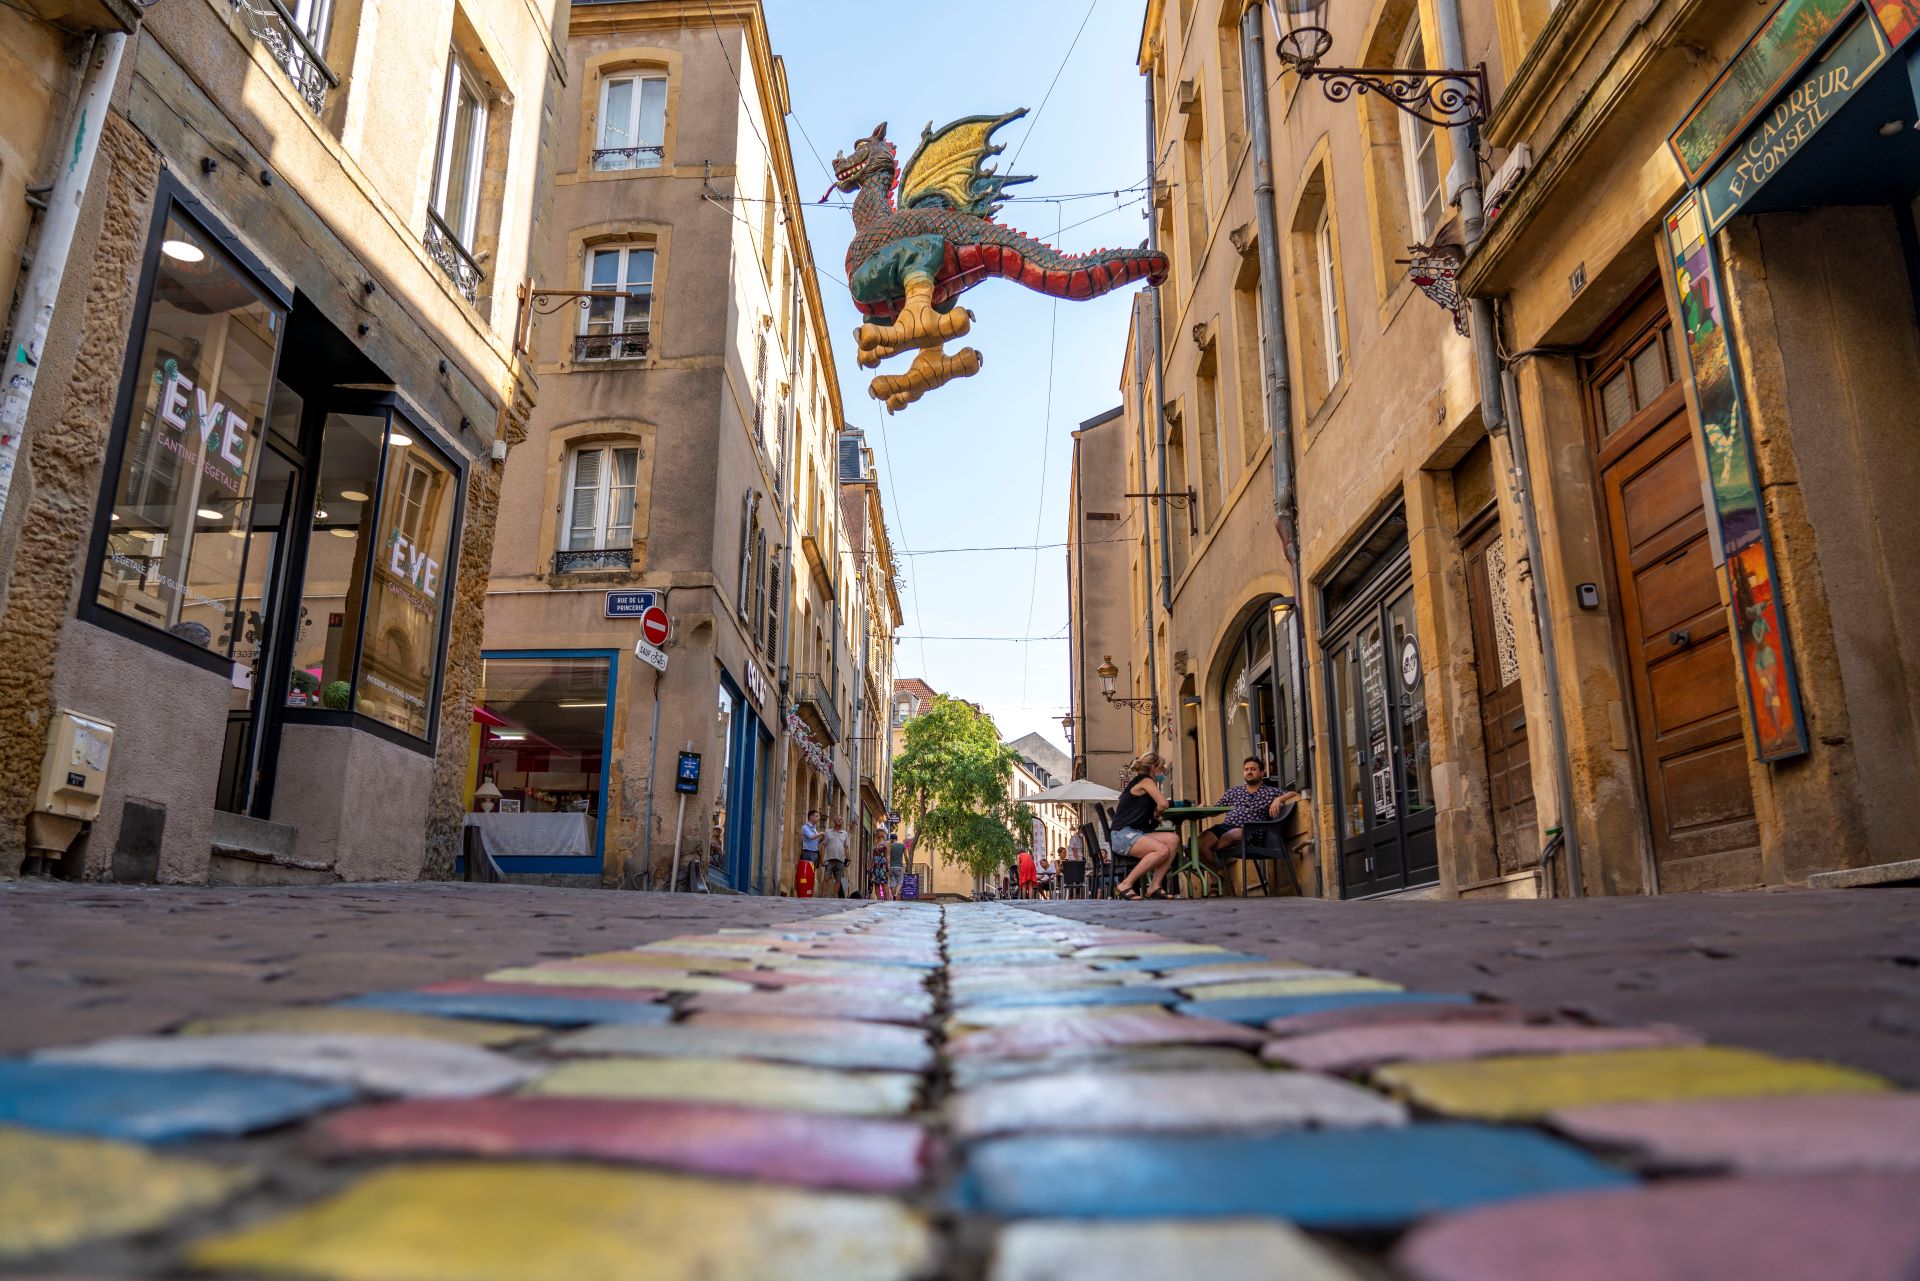 Le célèbre dragon de Metz plane au-dessus d'une rue colorée. Les bâtiments jaunes et les rues peintes créent une atmosphère ludique.